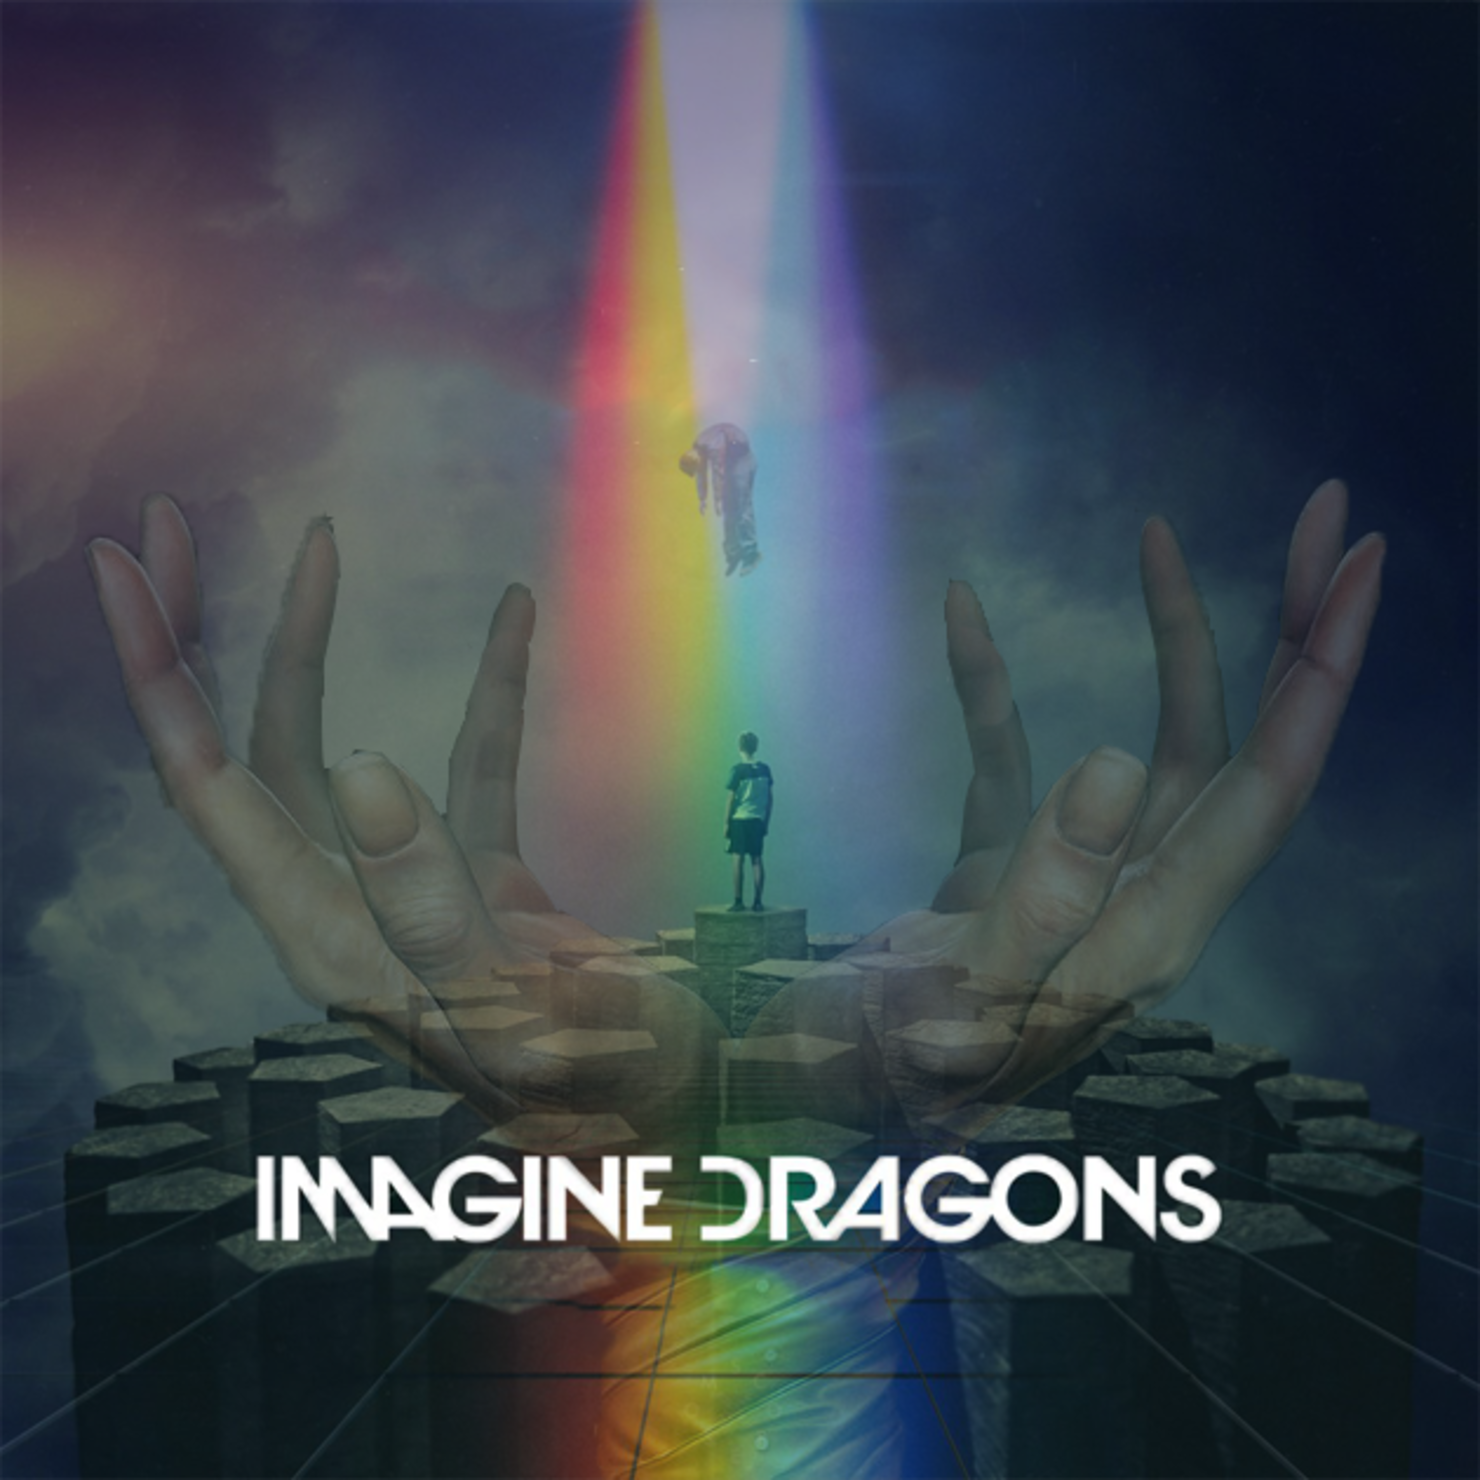 Image dragon песни. Imagine Dragons альбомы. Imagine Dragons обложки. Enemy imagine Dragons обложка. Imagine Dragons Origins обложка.